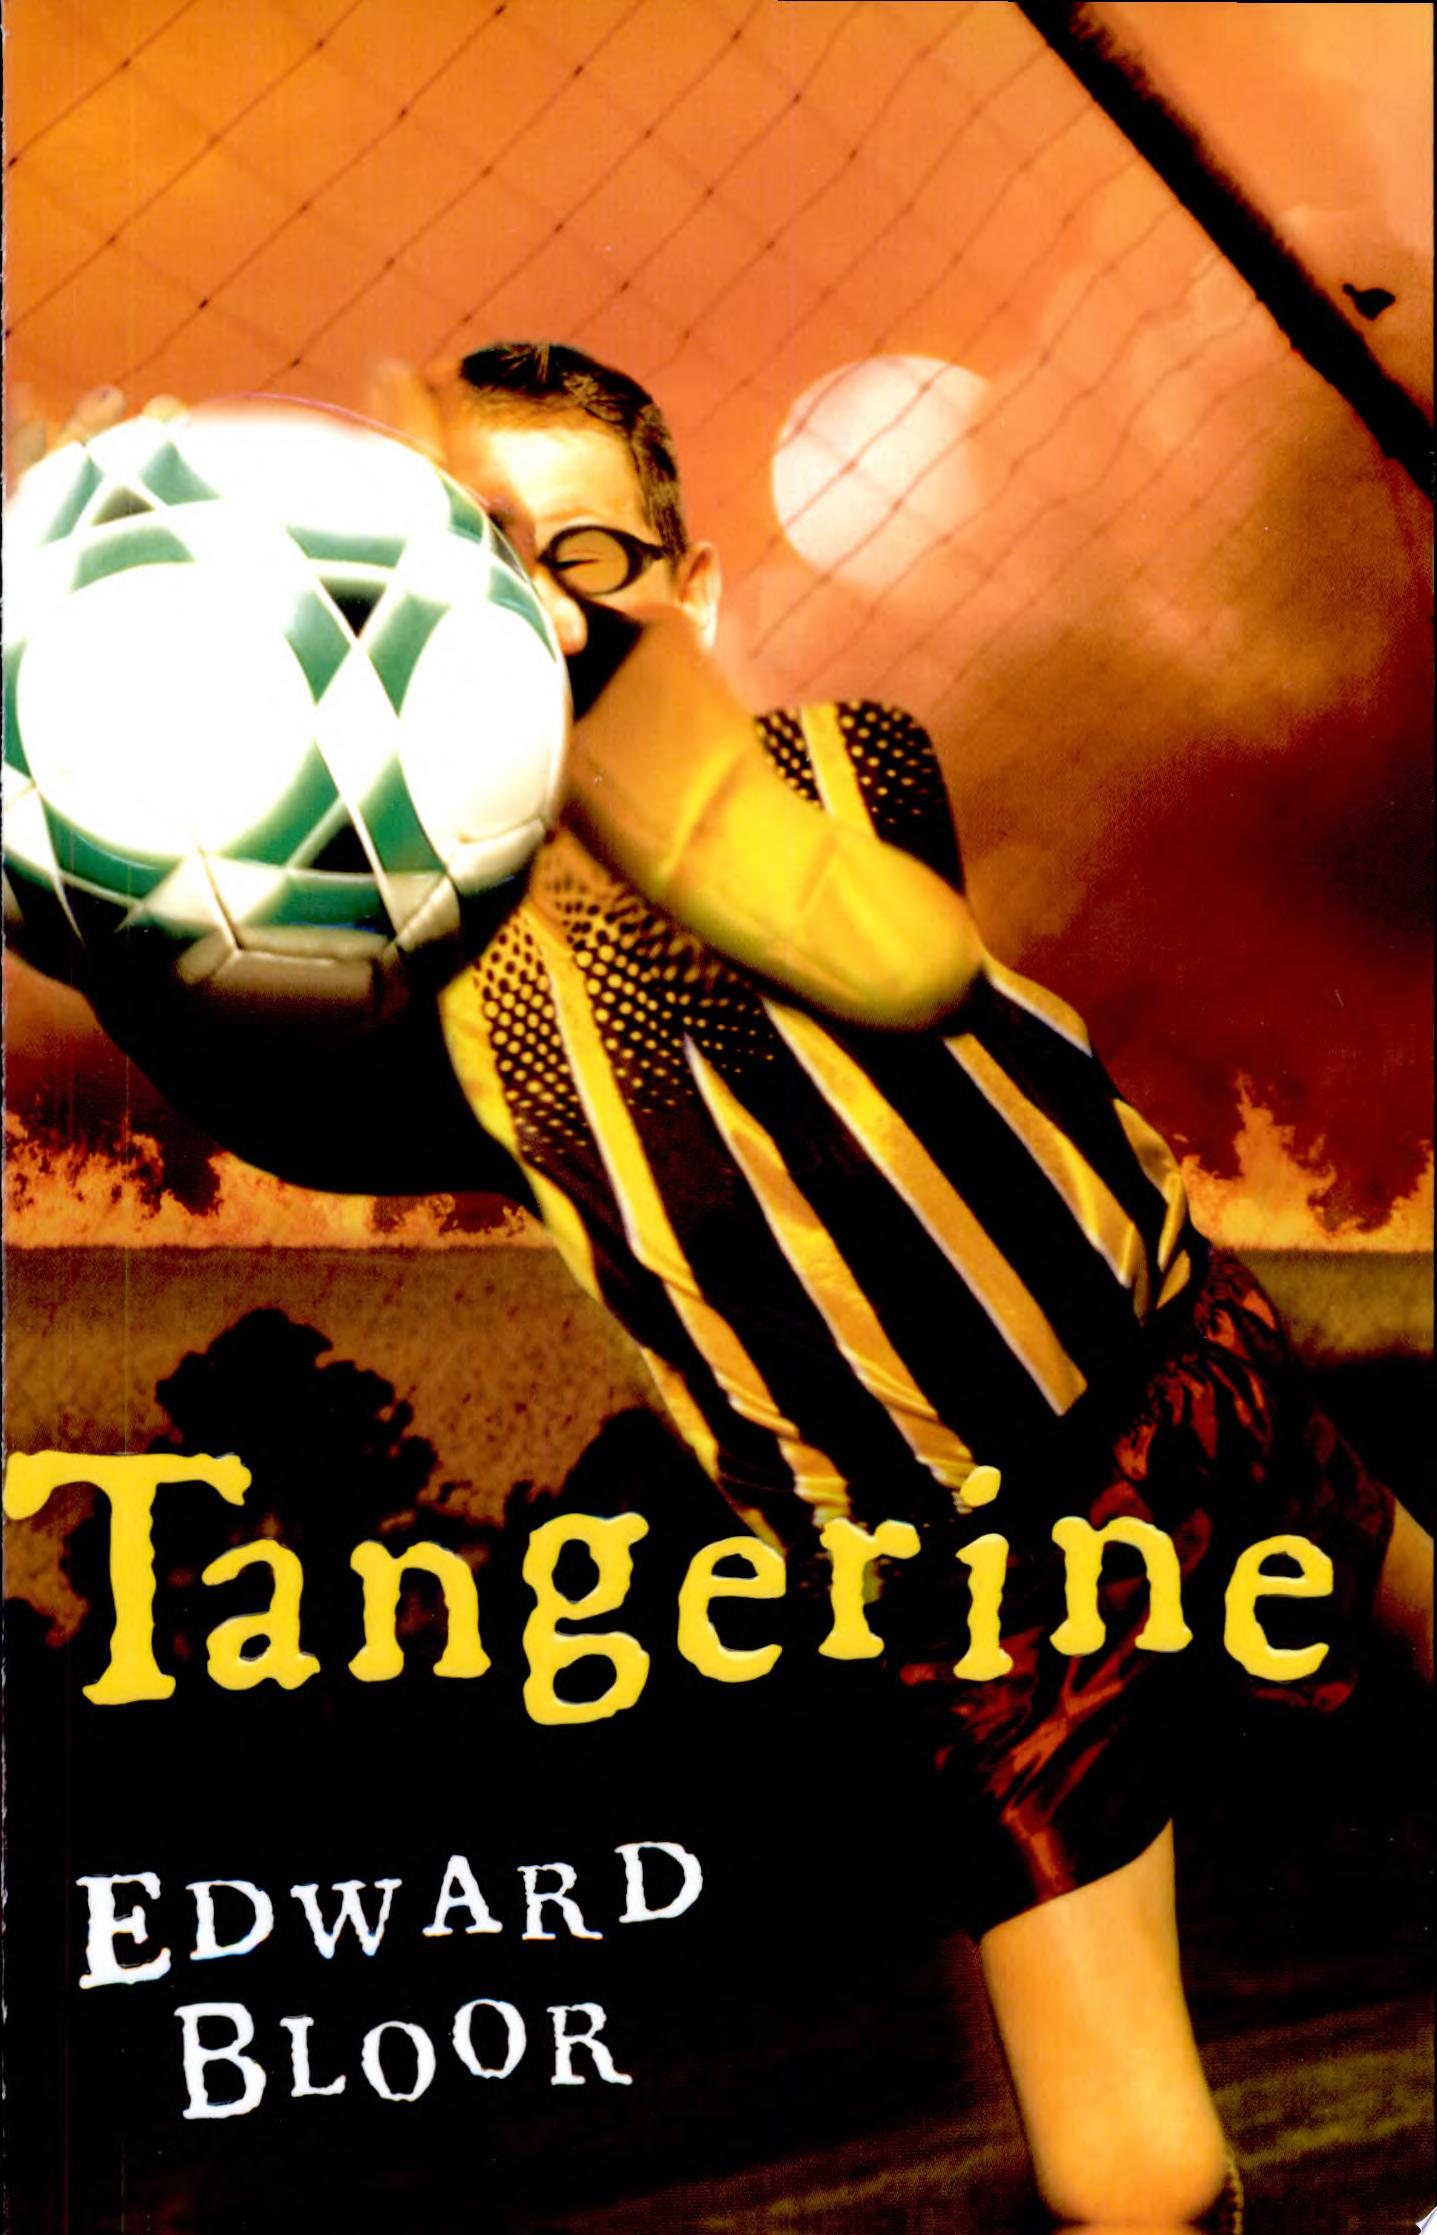 Image for "Tangerine"